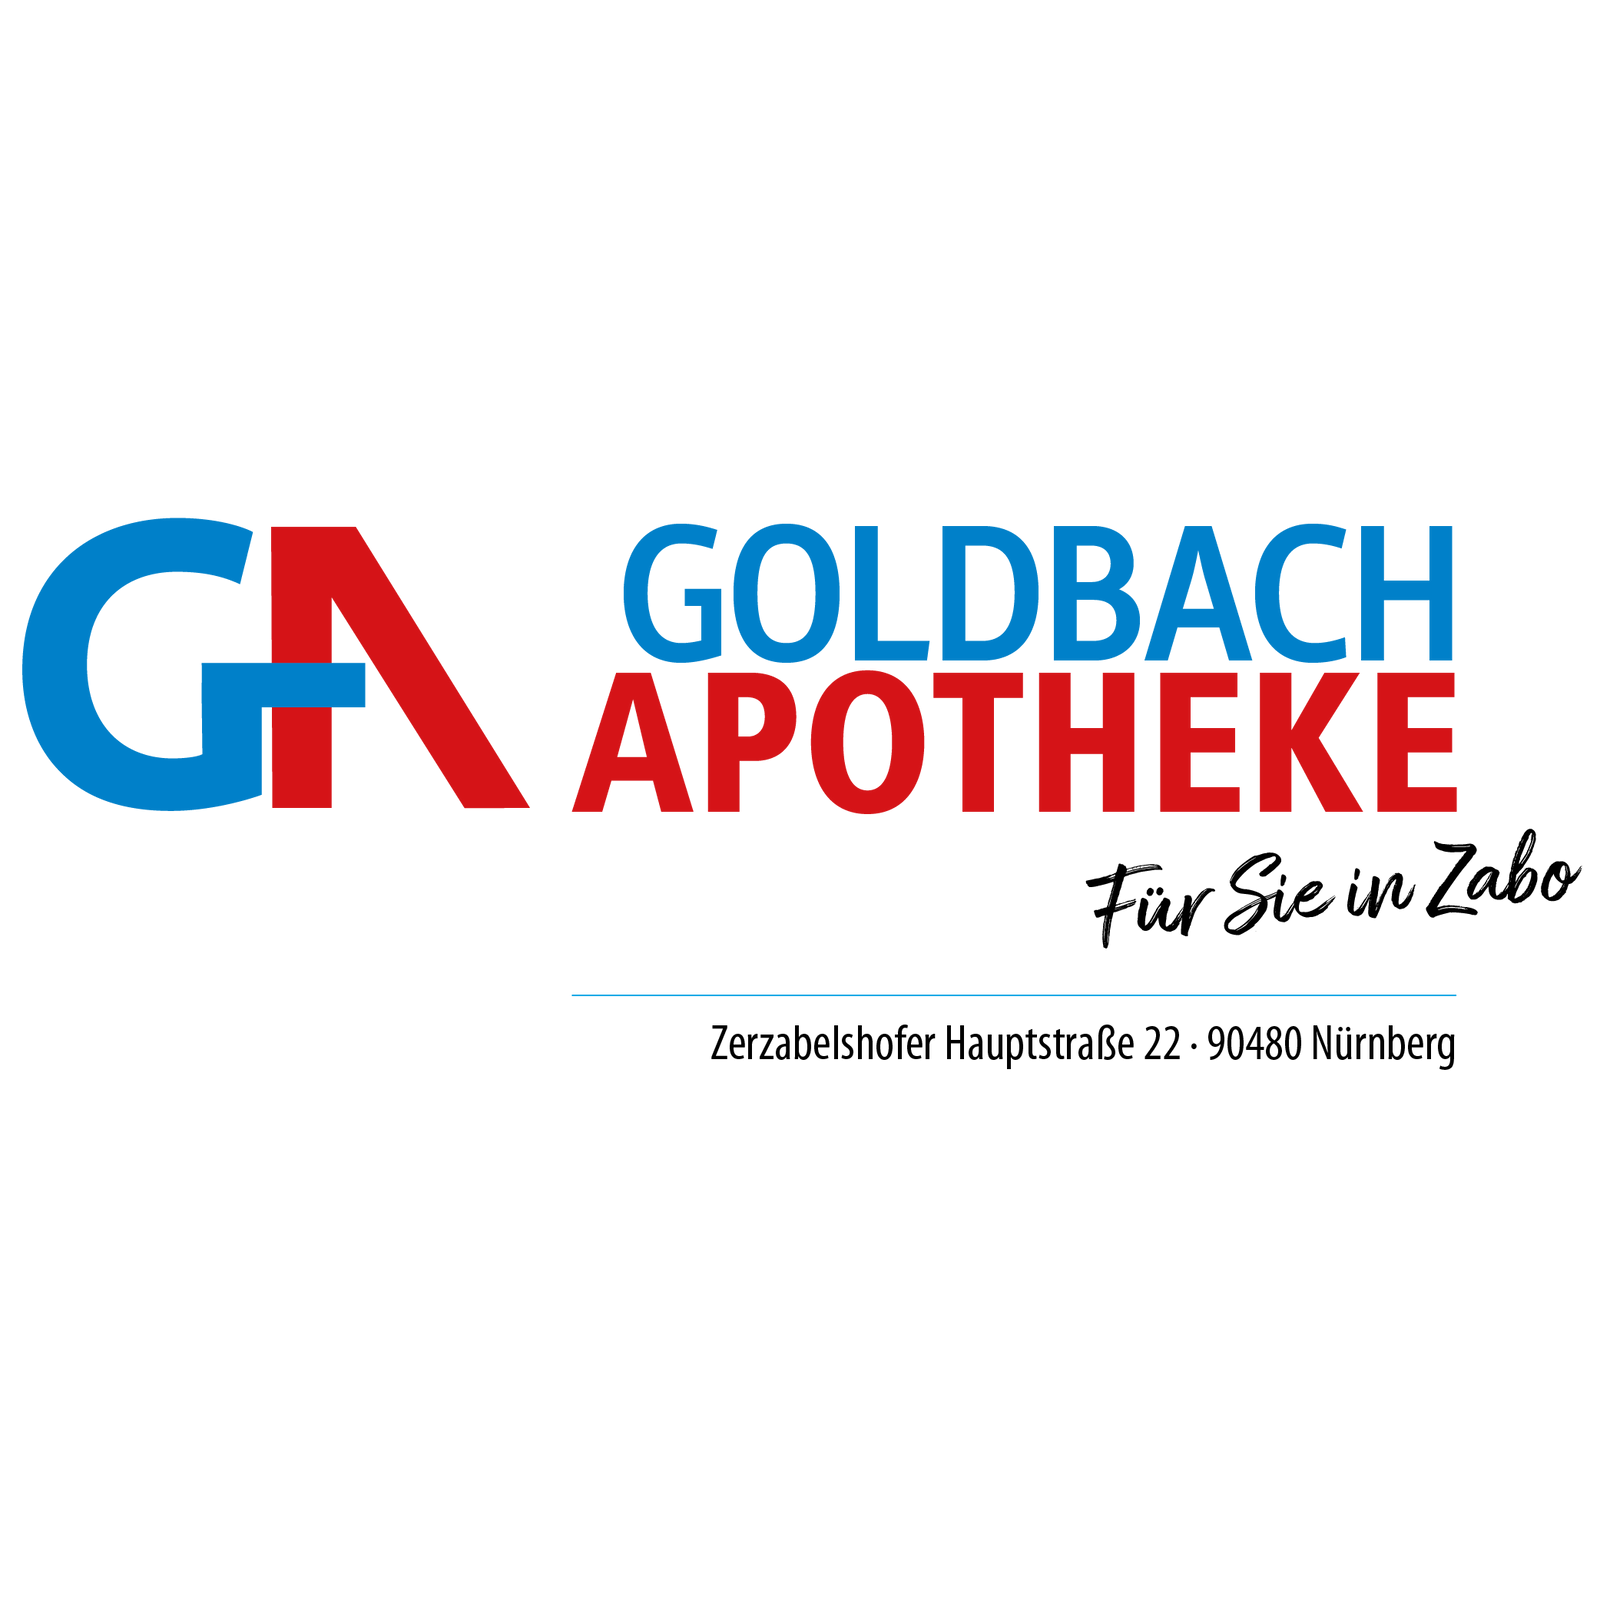 Goldbach-Apotheke Zabo in Nürnberg - Logo